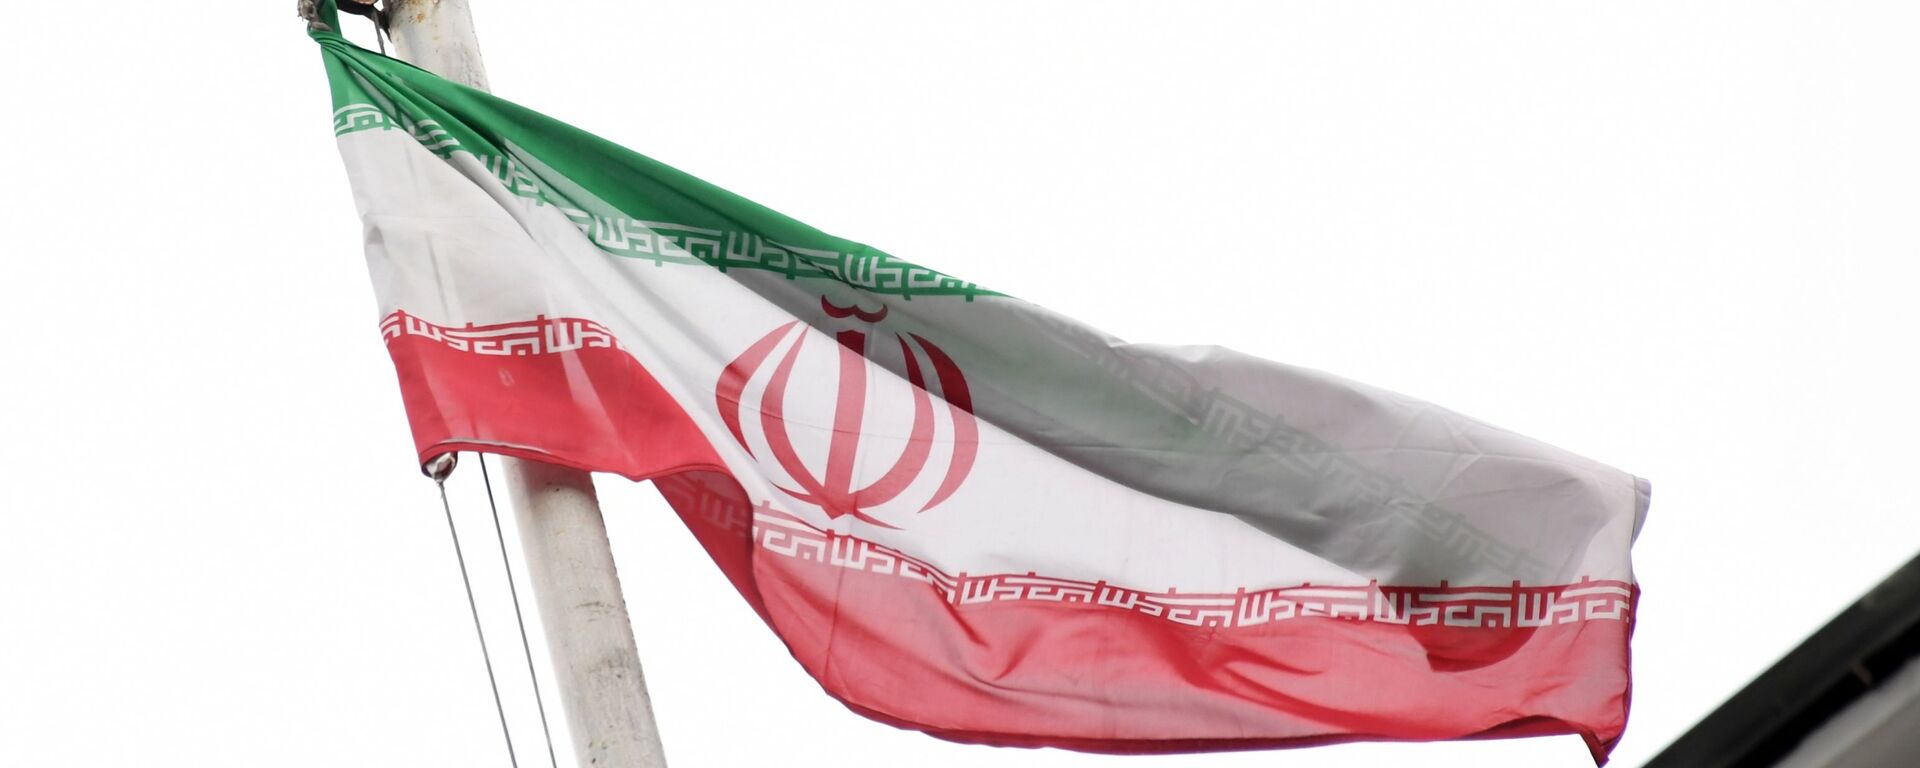 Флаг посольства Исламской Республики Иран. - Sputnik Латвия, 1920, 21.08.2020